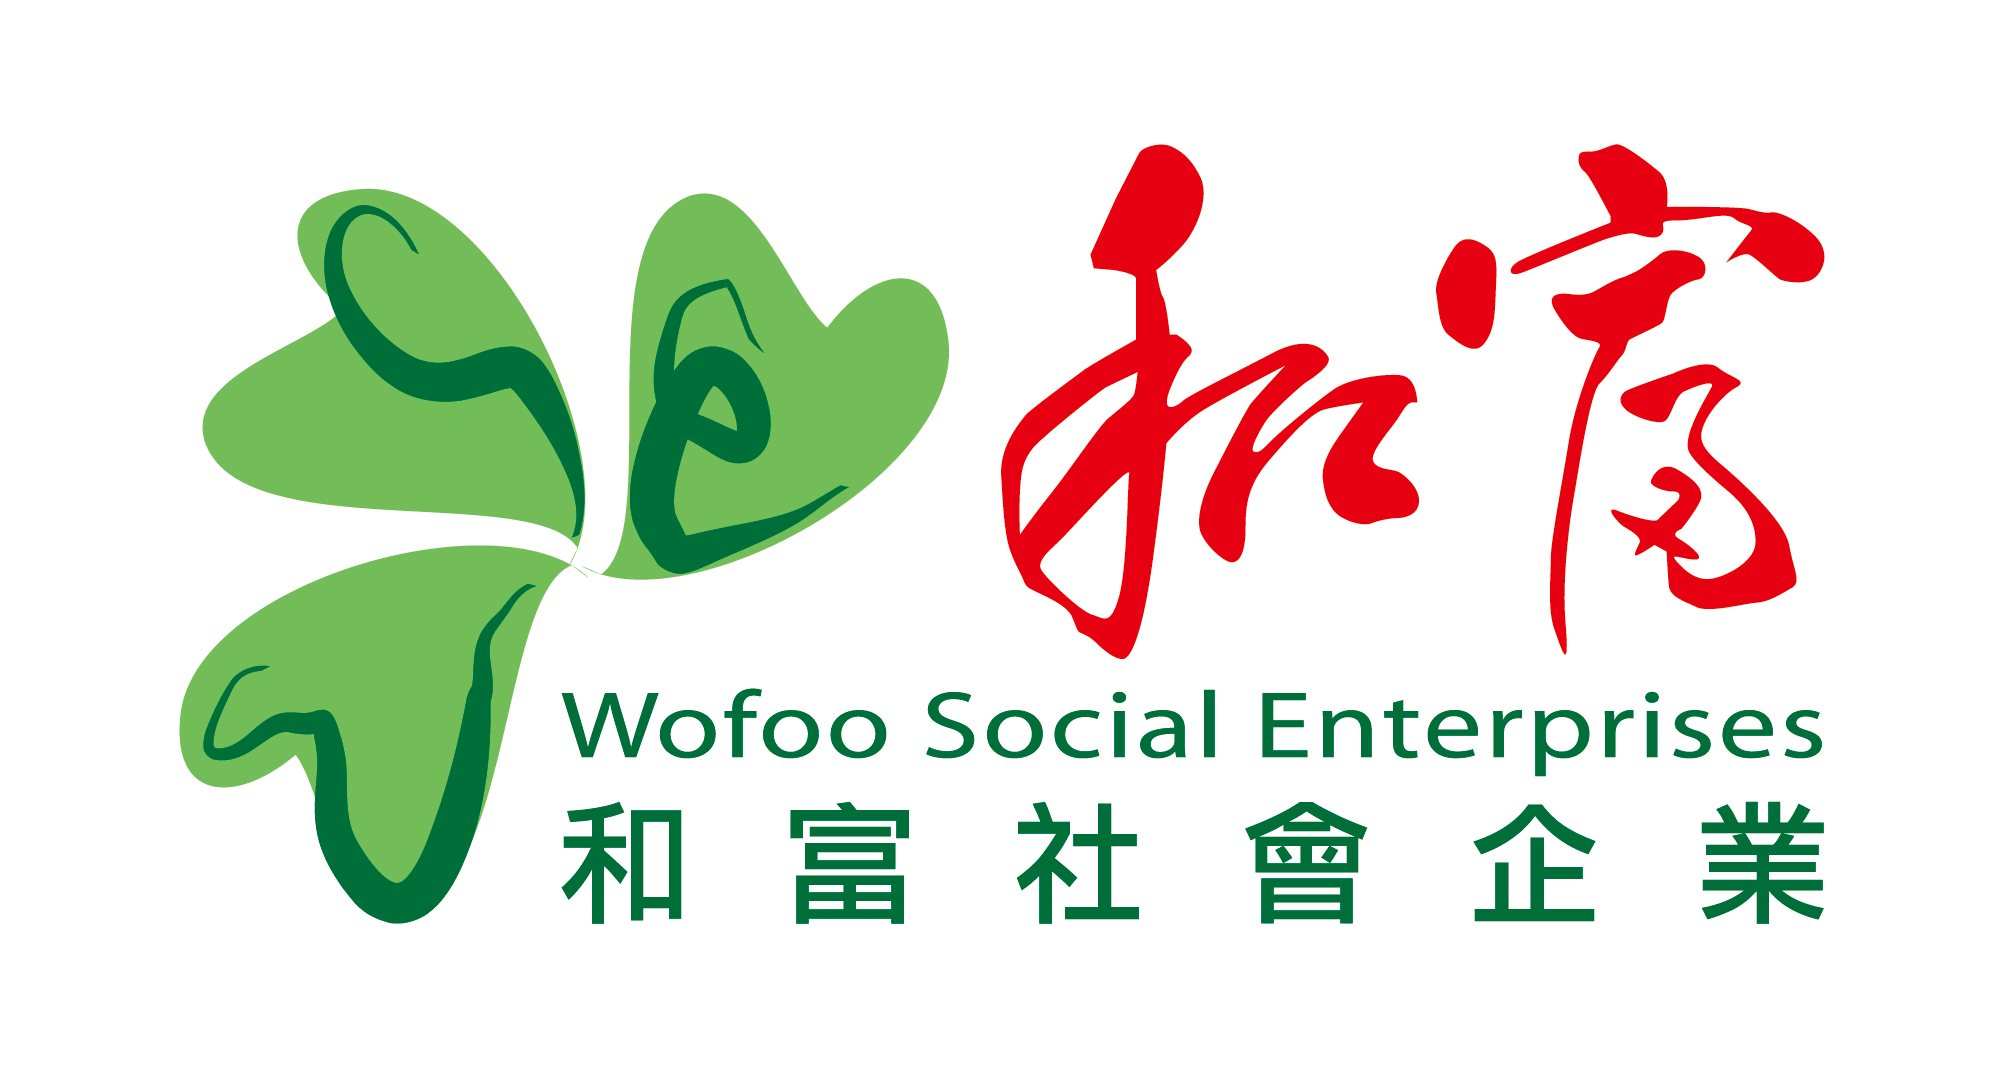 Wofoo Social Enterprises